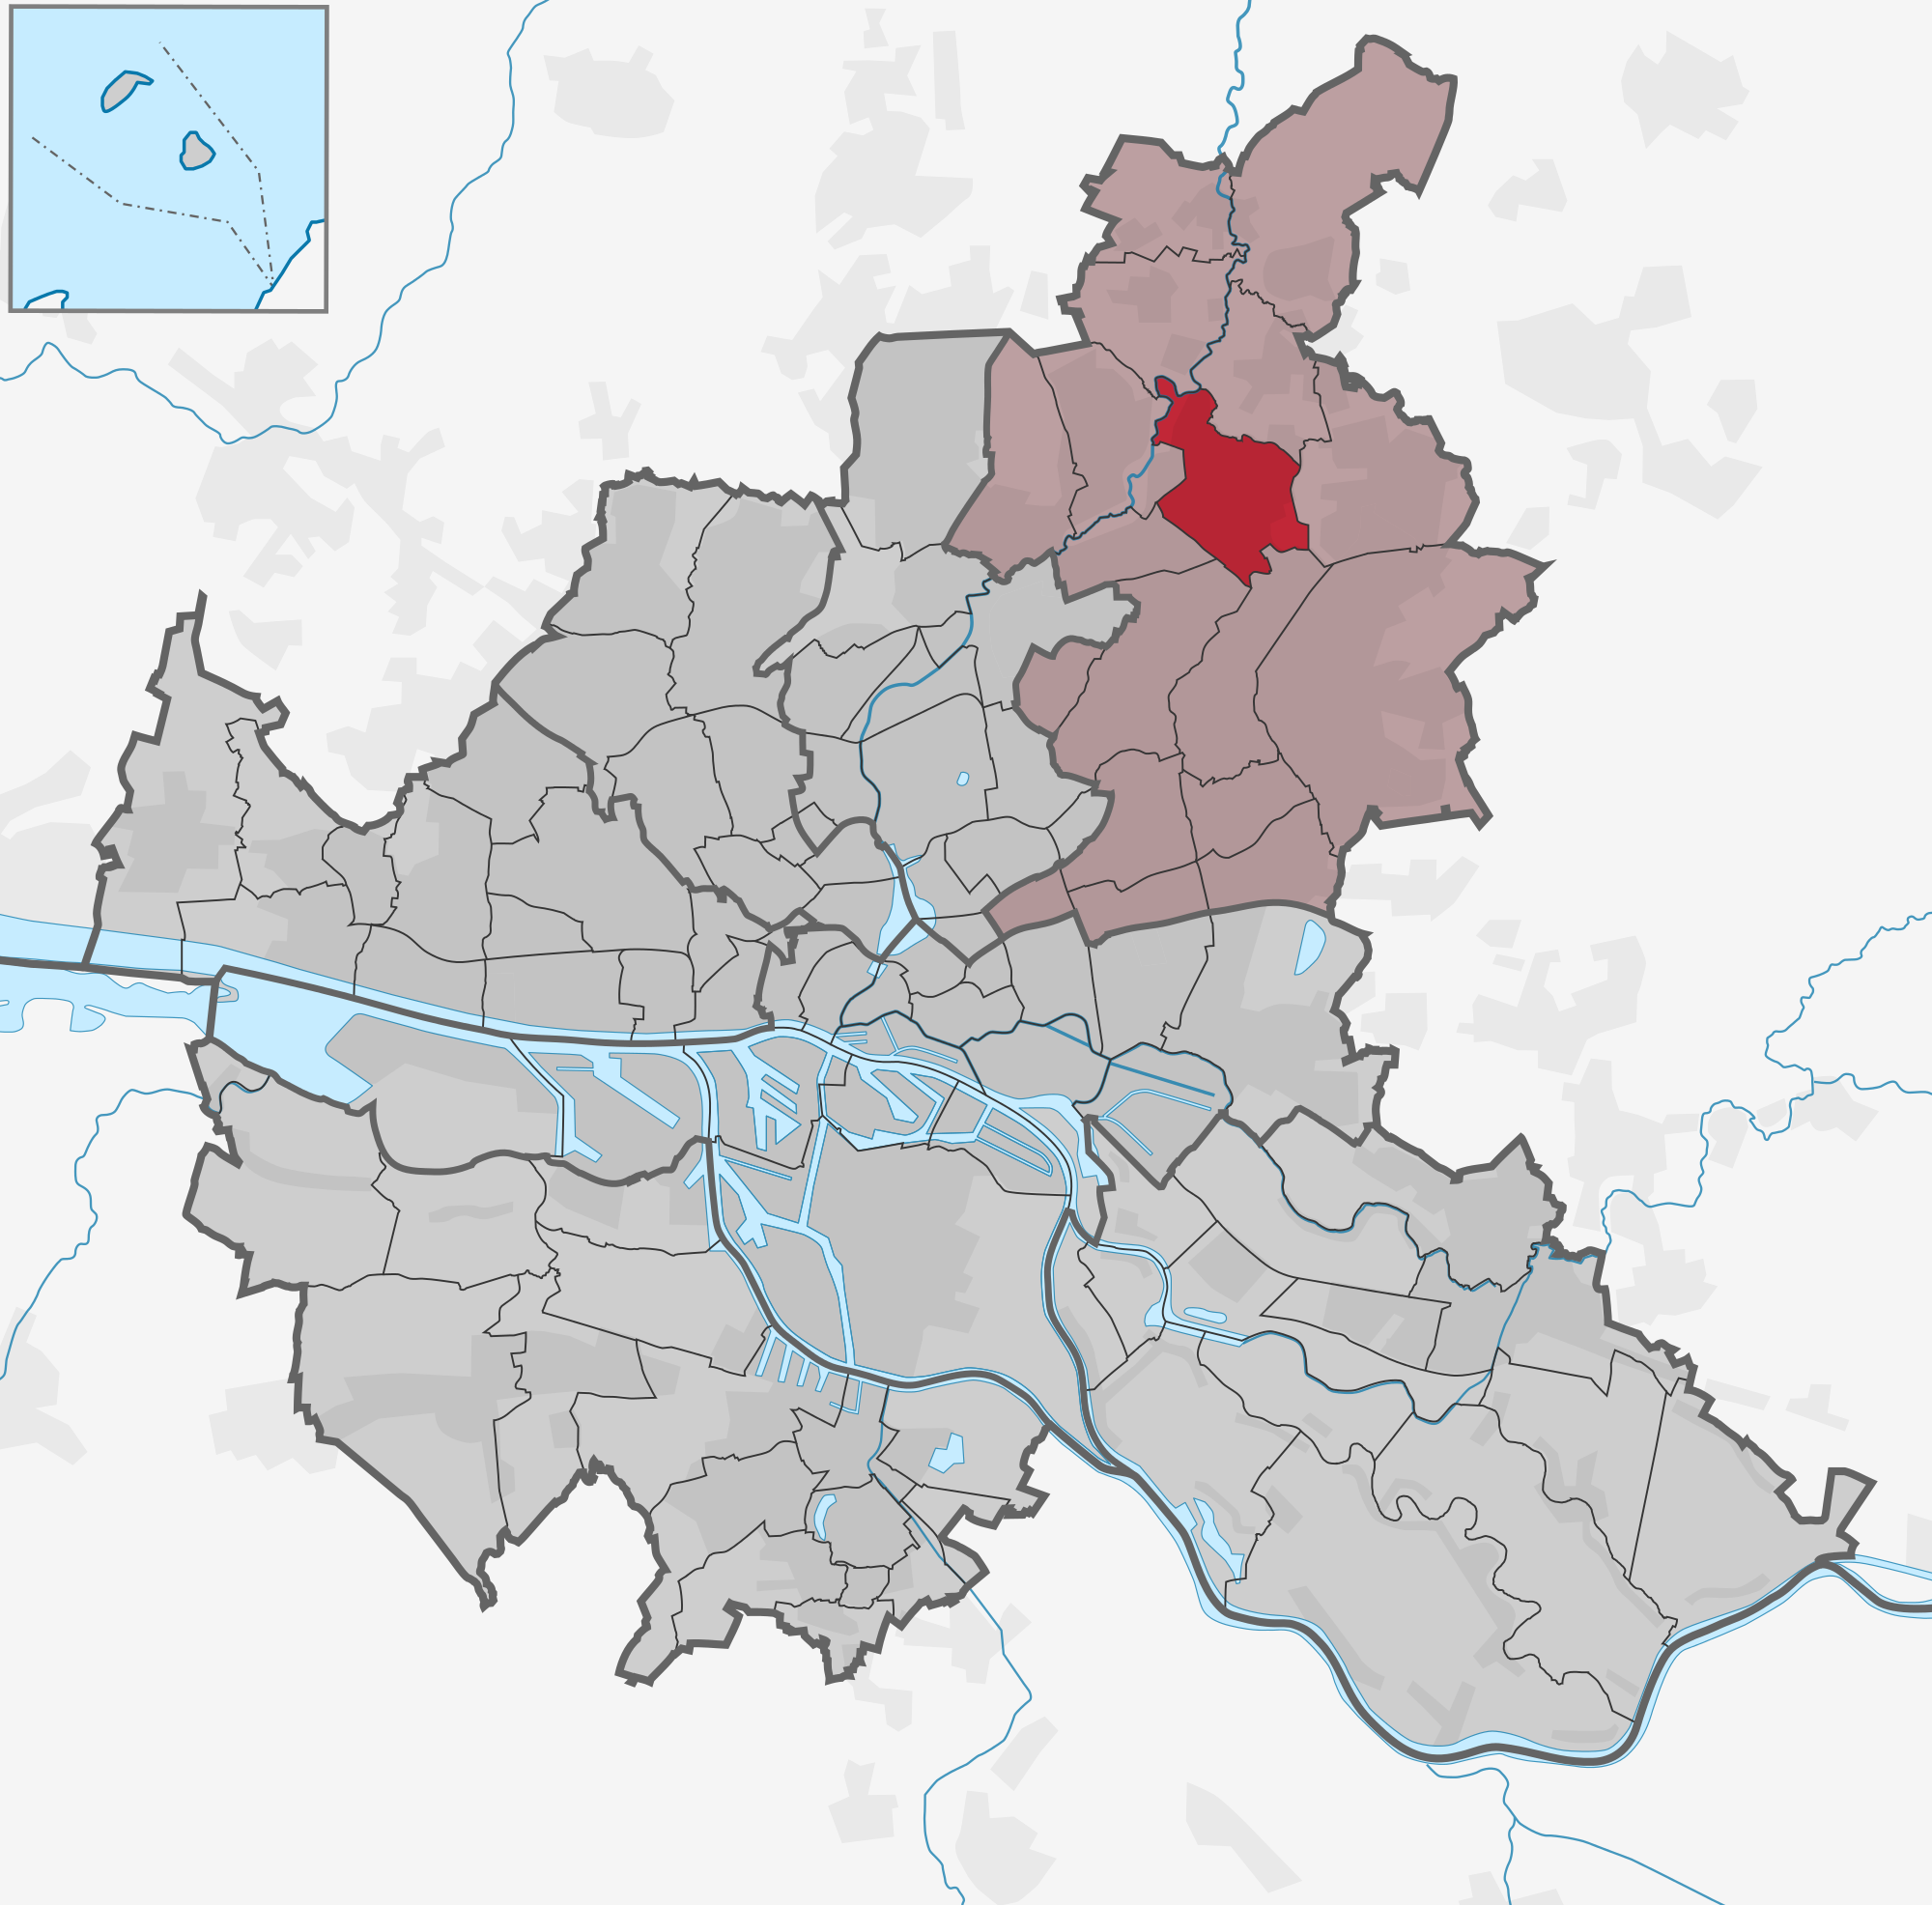 Stadtteil Sasel (Bezirk Wandsbek)